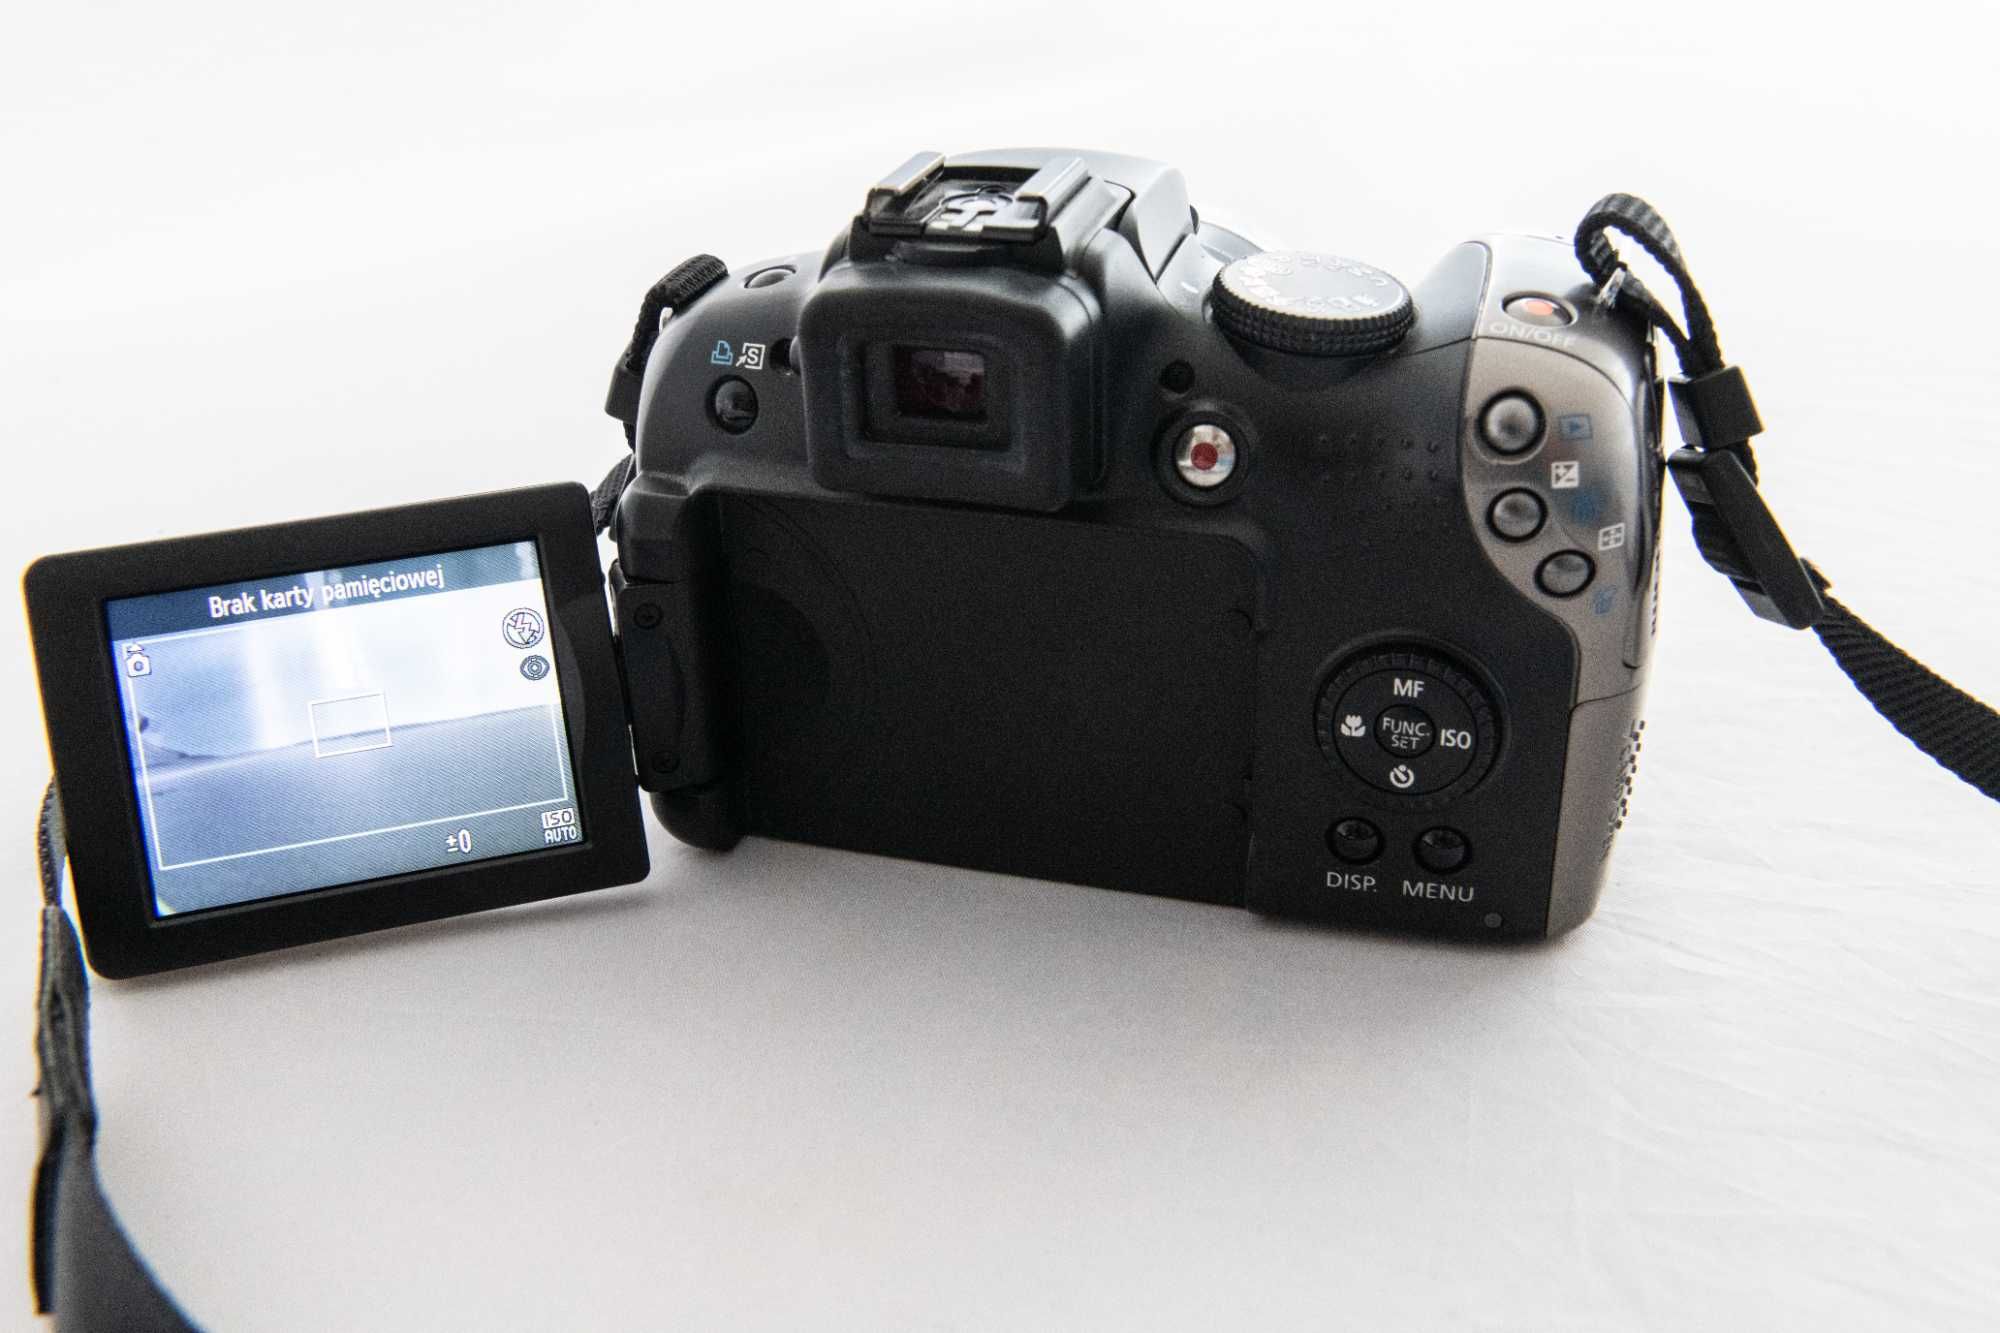 Aparat Canon PowerShot SX20 IS + karta 4GB + filtr polaryzacyjny